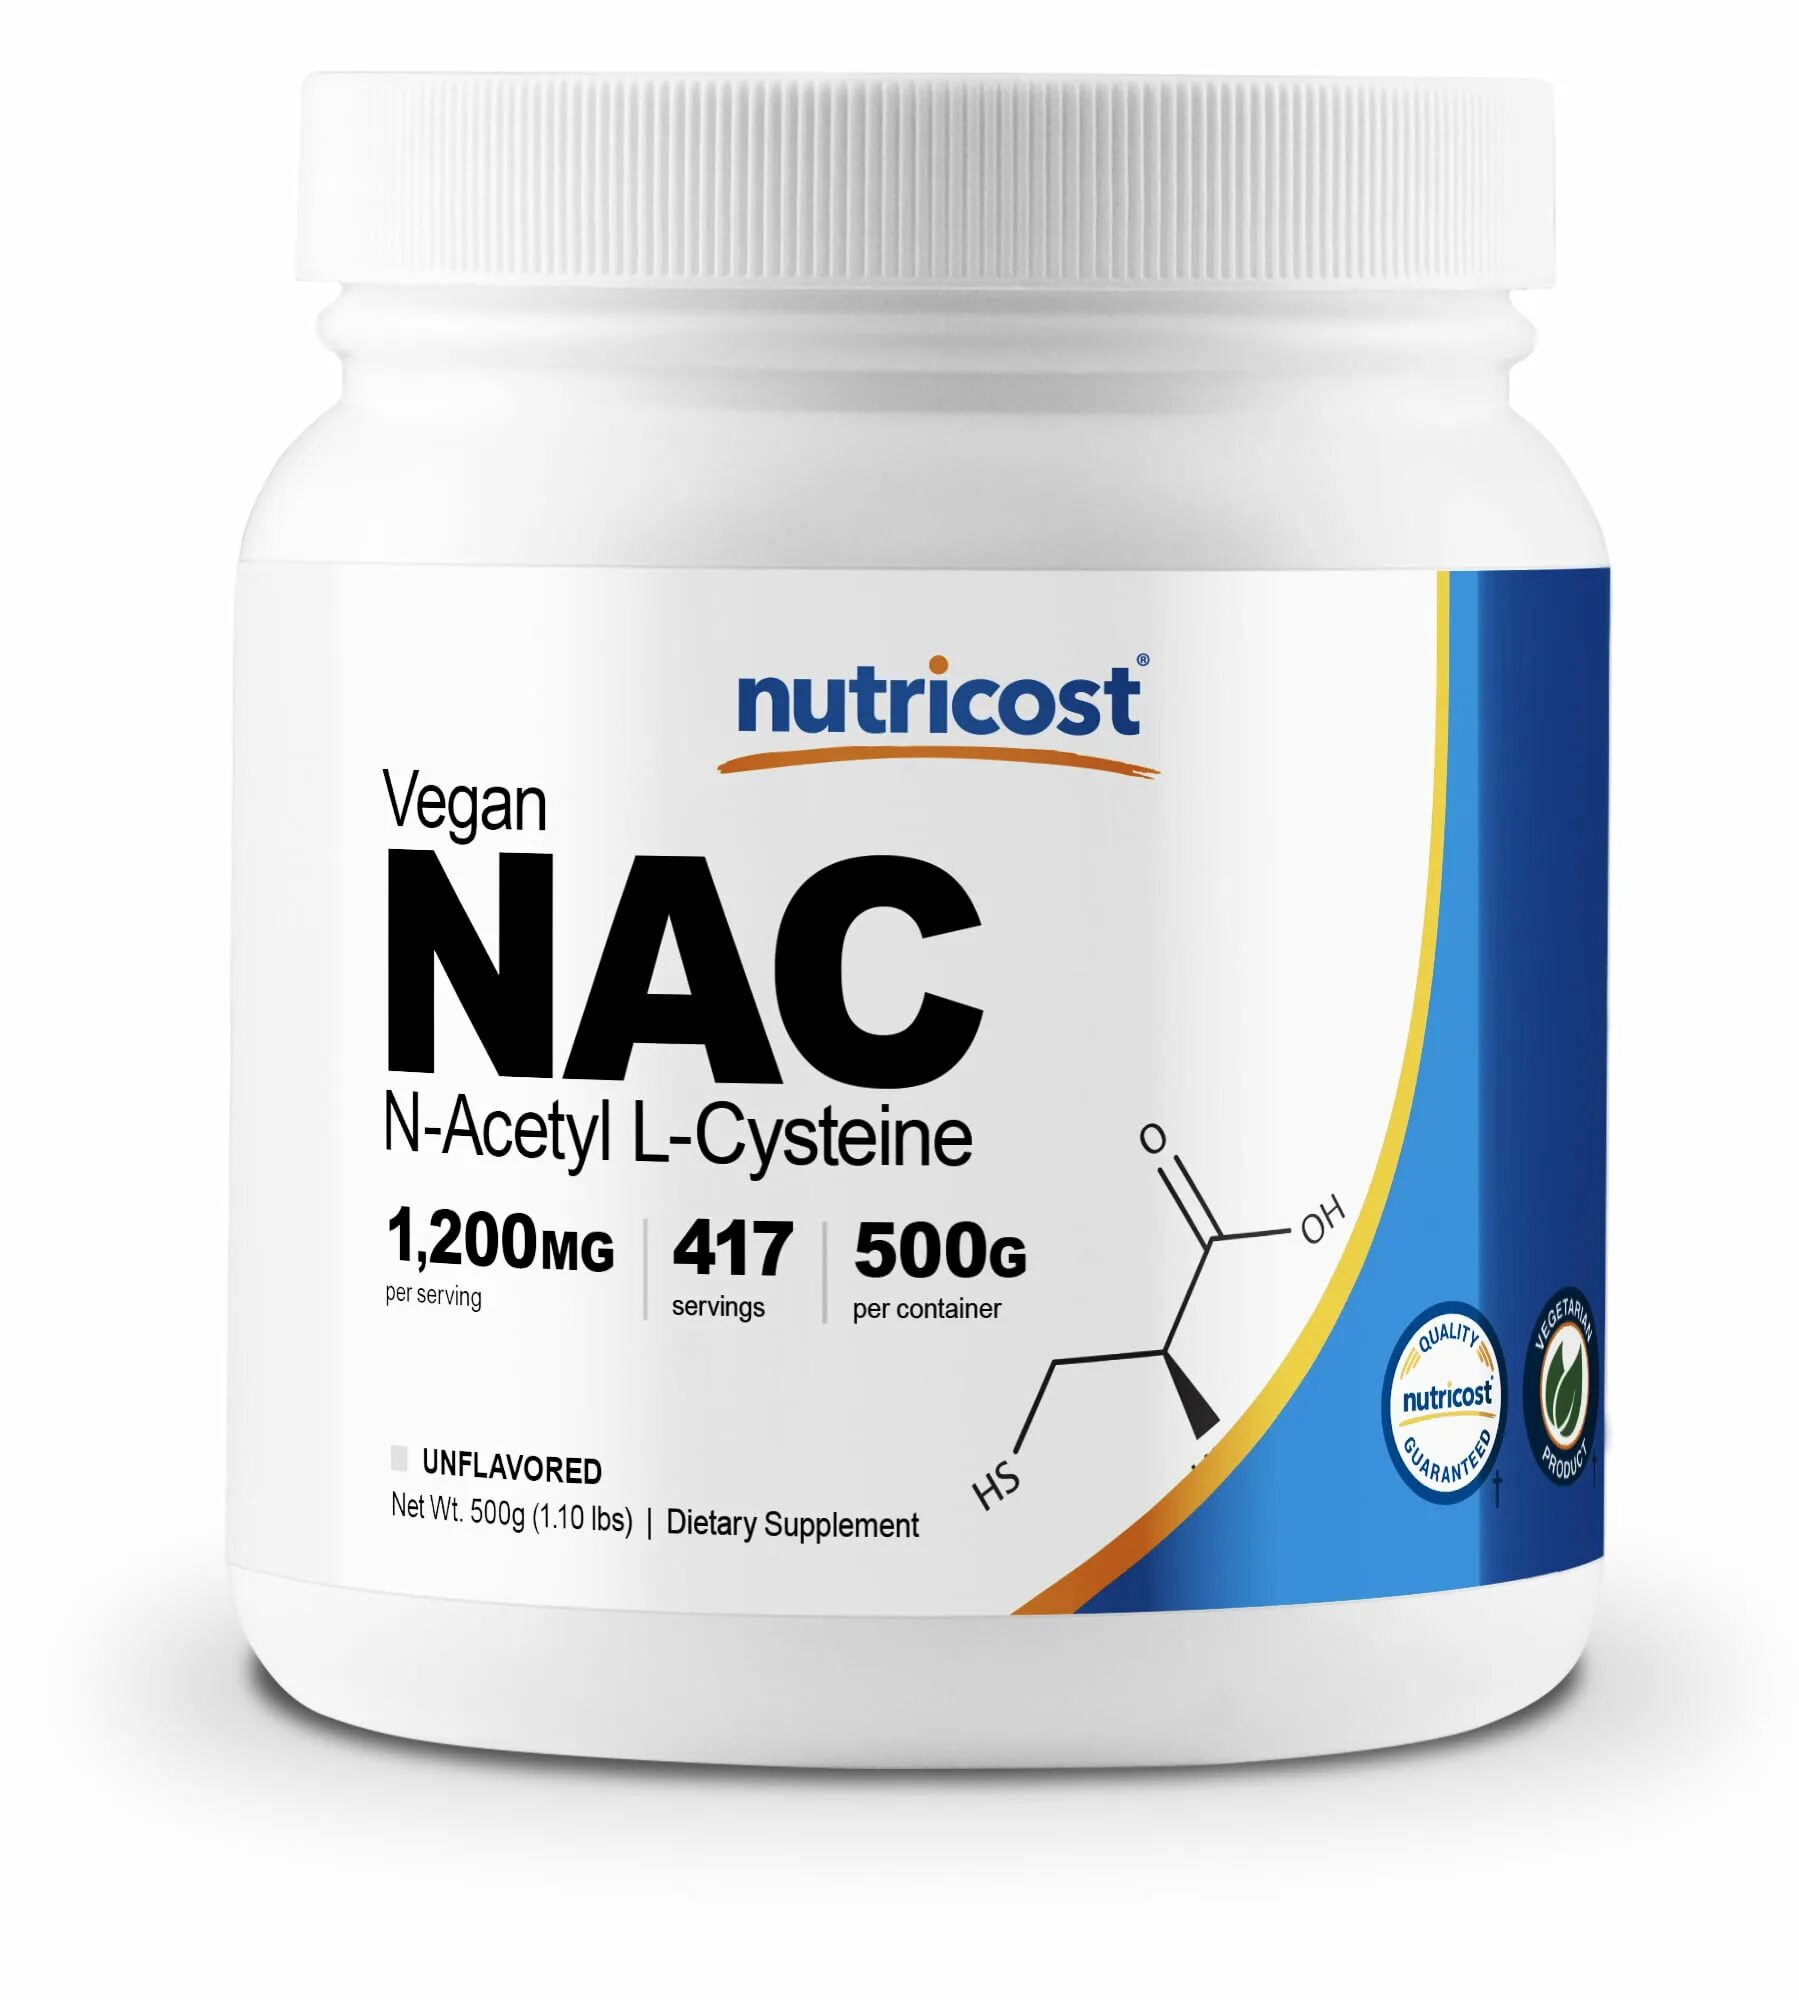 Nac добавка. L-Cysteine 500 мг. NAC ацетилцистеин. NAC 500. NAC N acetyl l Cysteine.